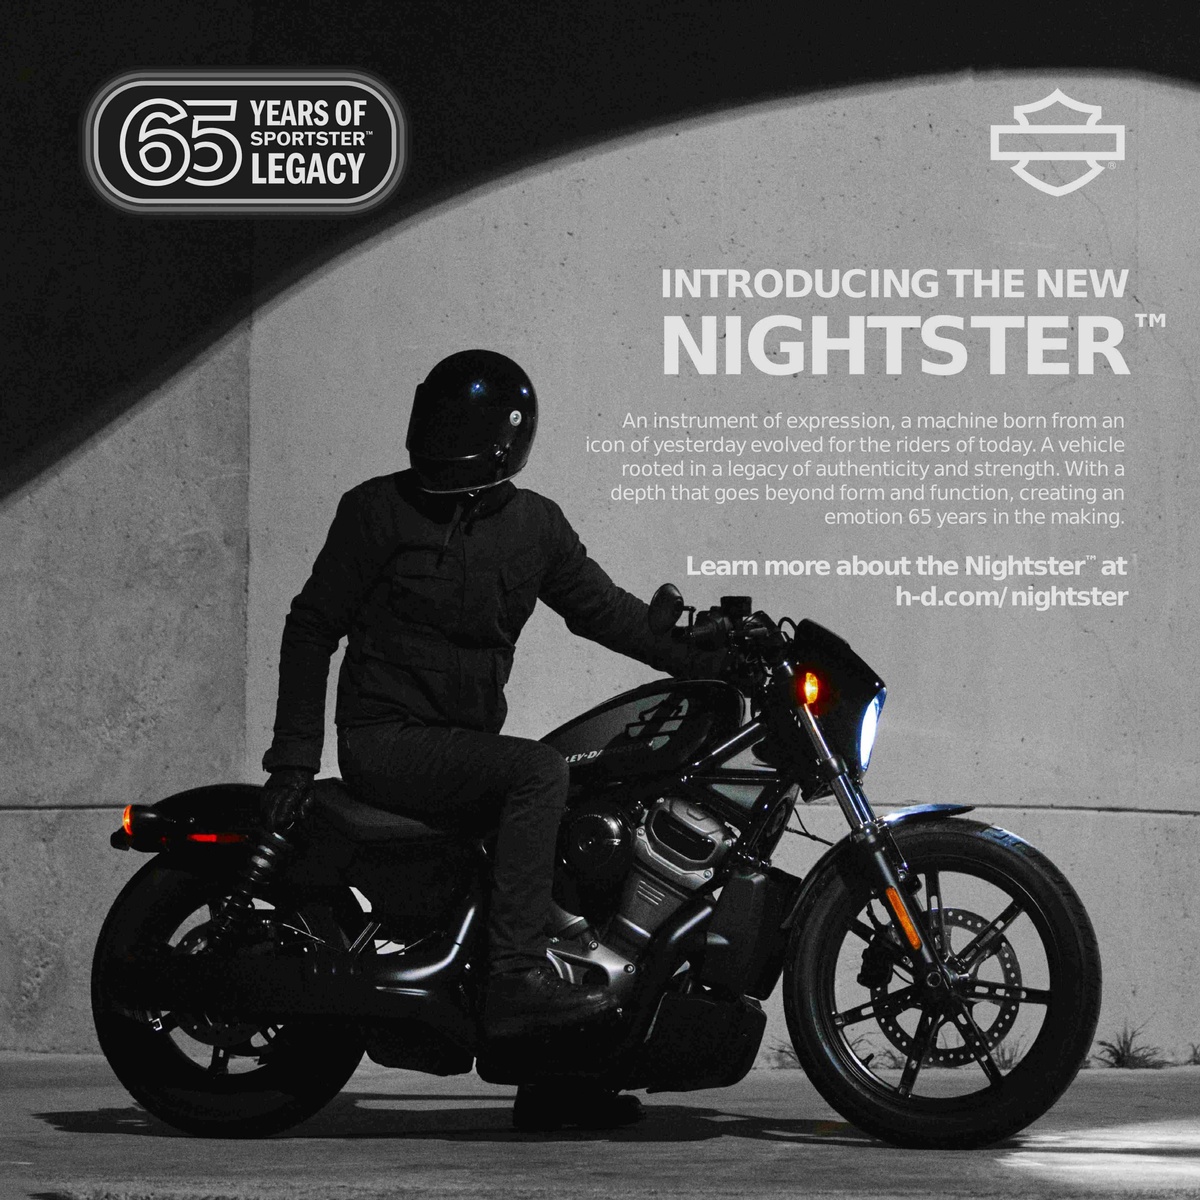 ยลโฉมรถมอเตอร์ไซค์รุ่น Nightster(TM) ปี 2022 ในวันที่ 7 พฤษภาคม นี้ ณ งาน Open House ที่ตัวแทนจำหน่ายอย่างเป็นทางการของ Harley-Davidson(R)